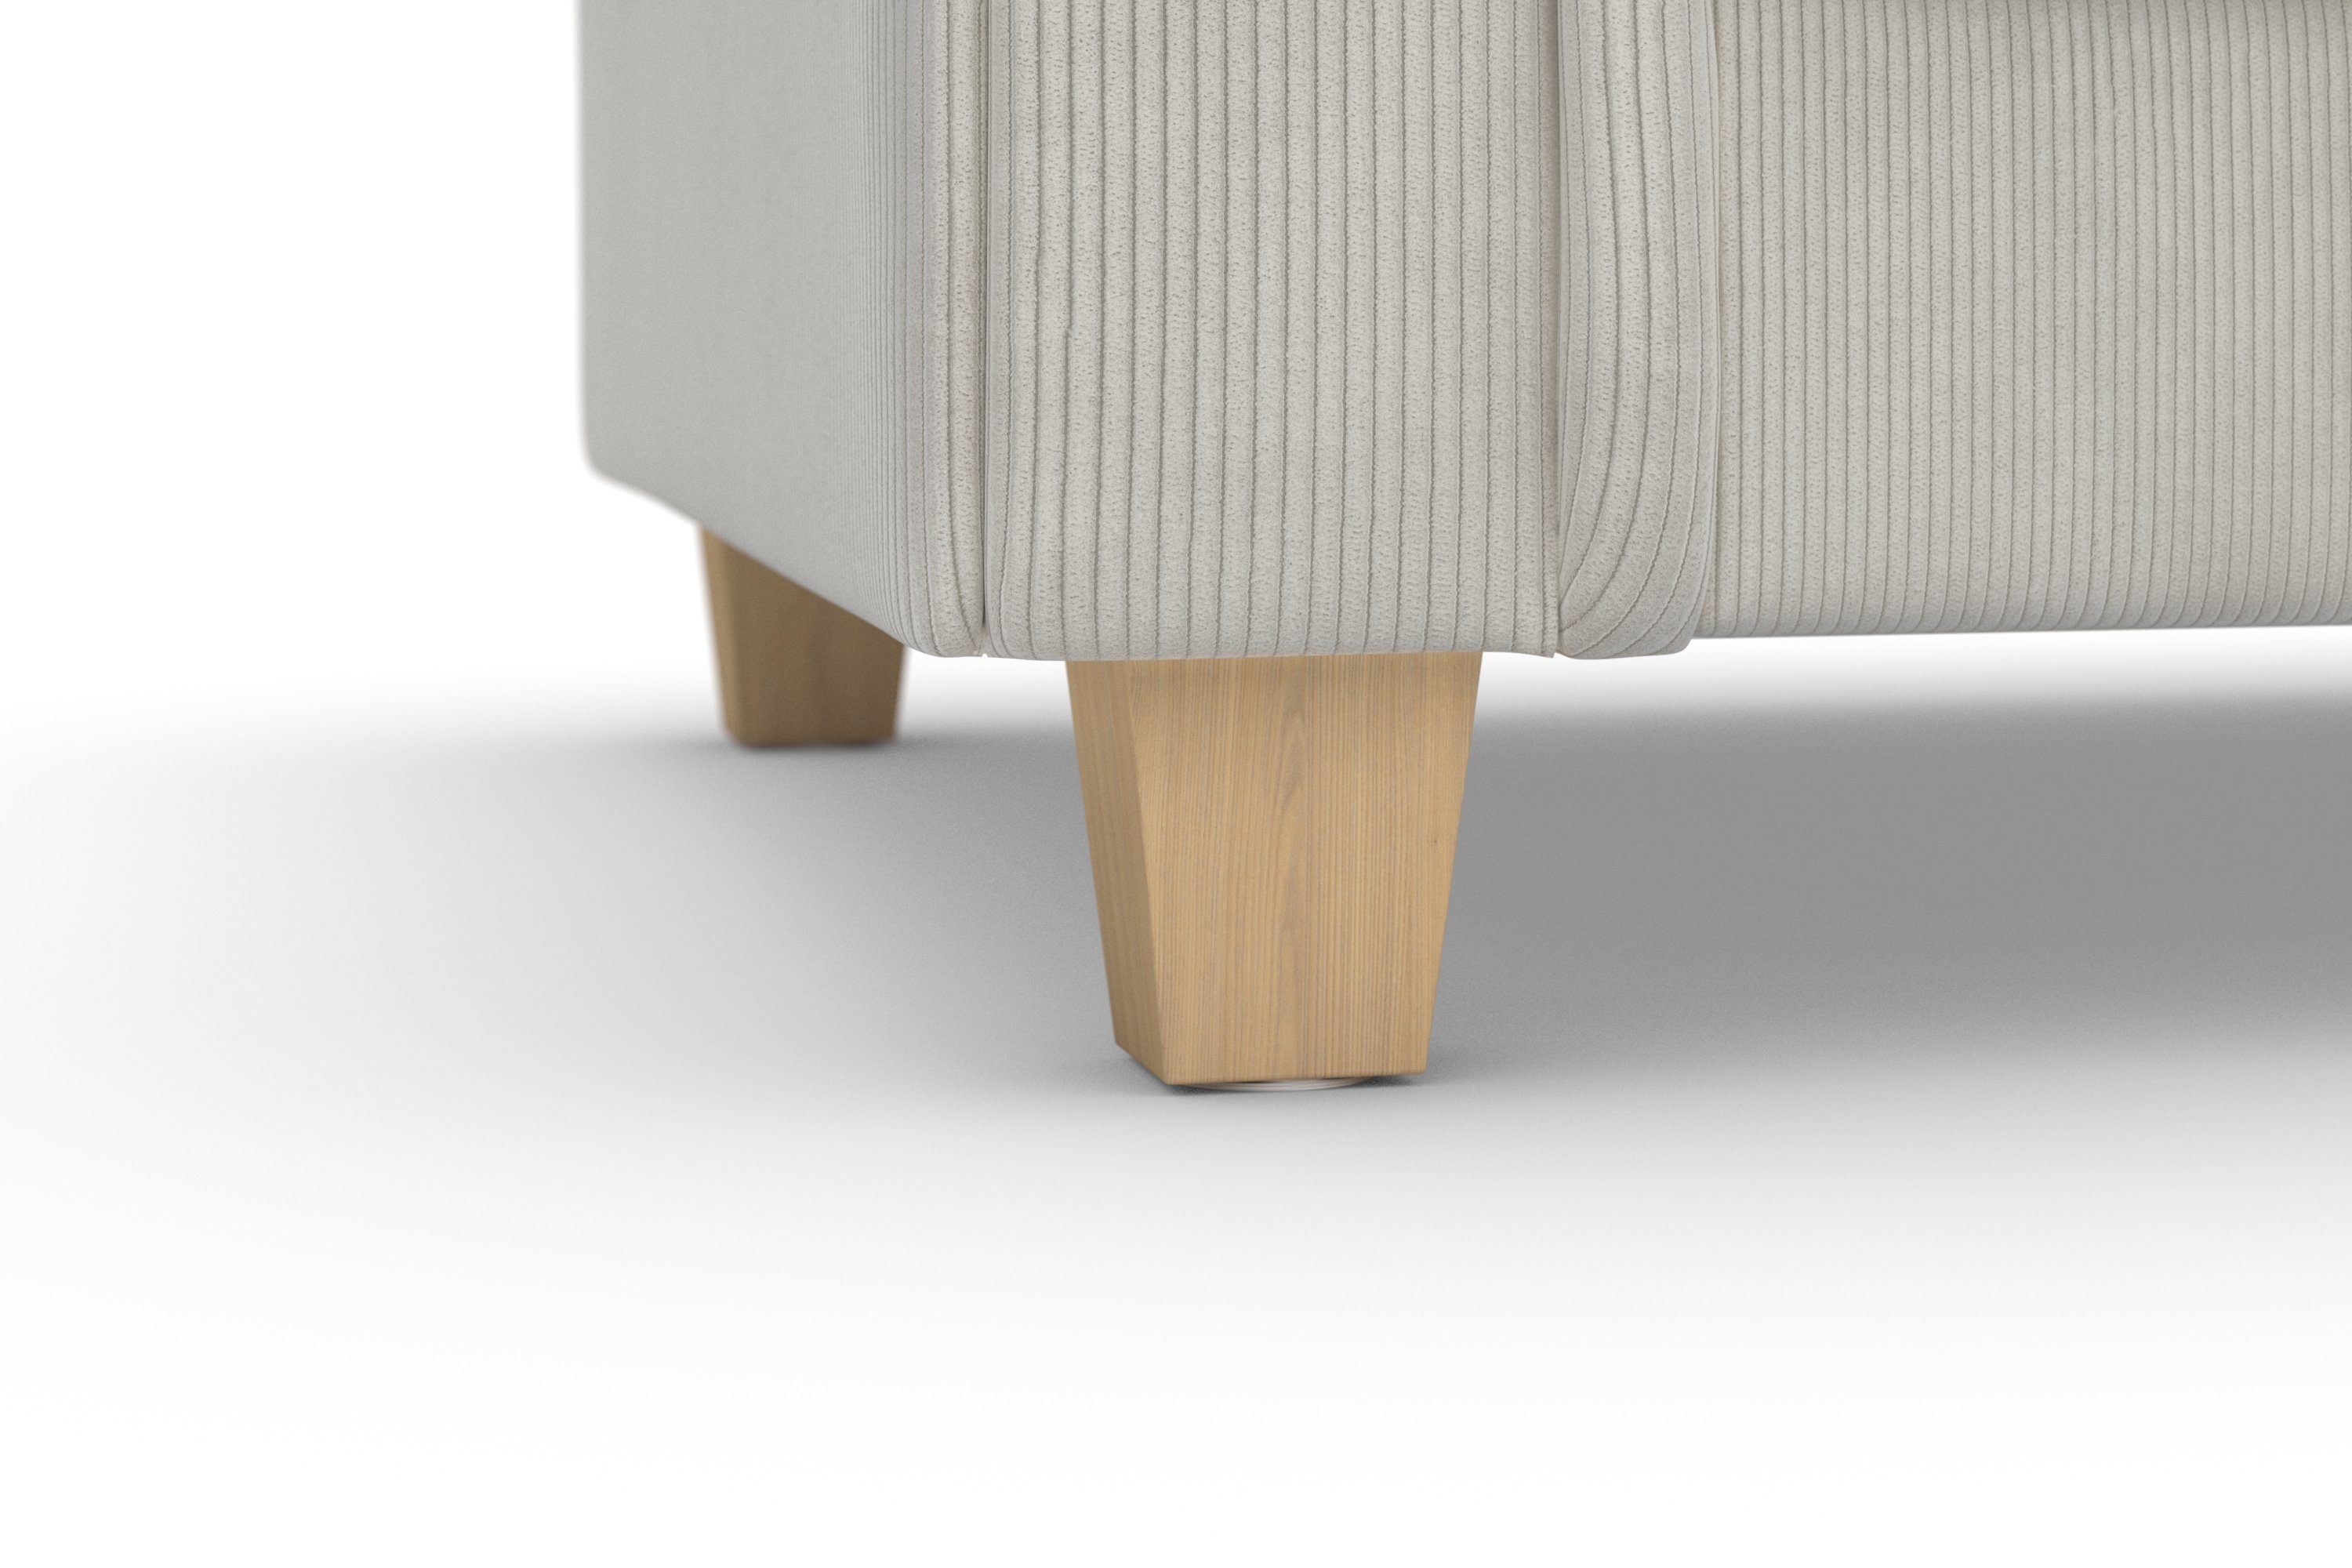 Home 2 Sitzkomfort kuschelige Kissen Design, mit zeitlosem Big-Sofa Megasofa, affaire viele Teile, weichem und Queenie